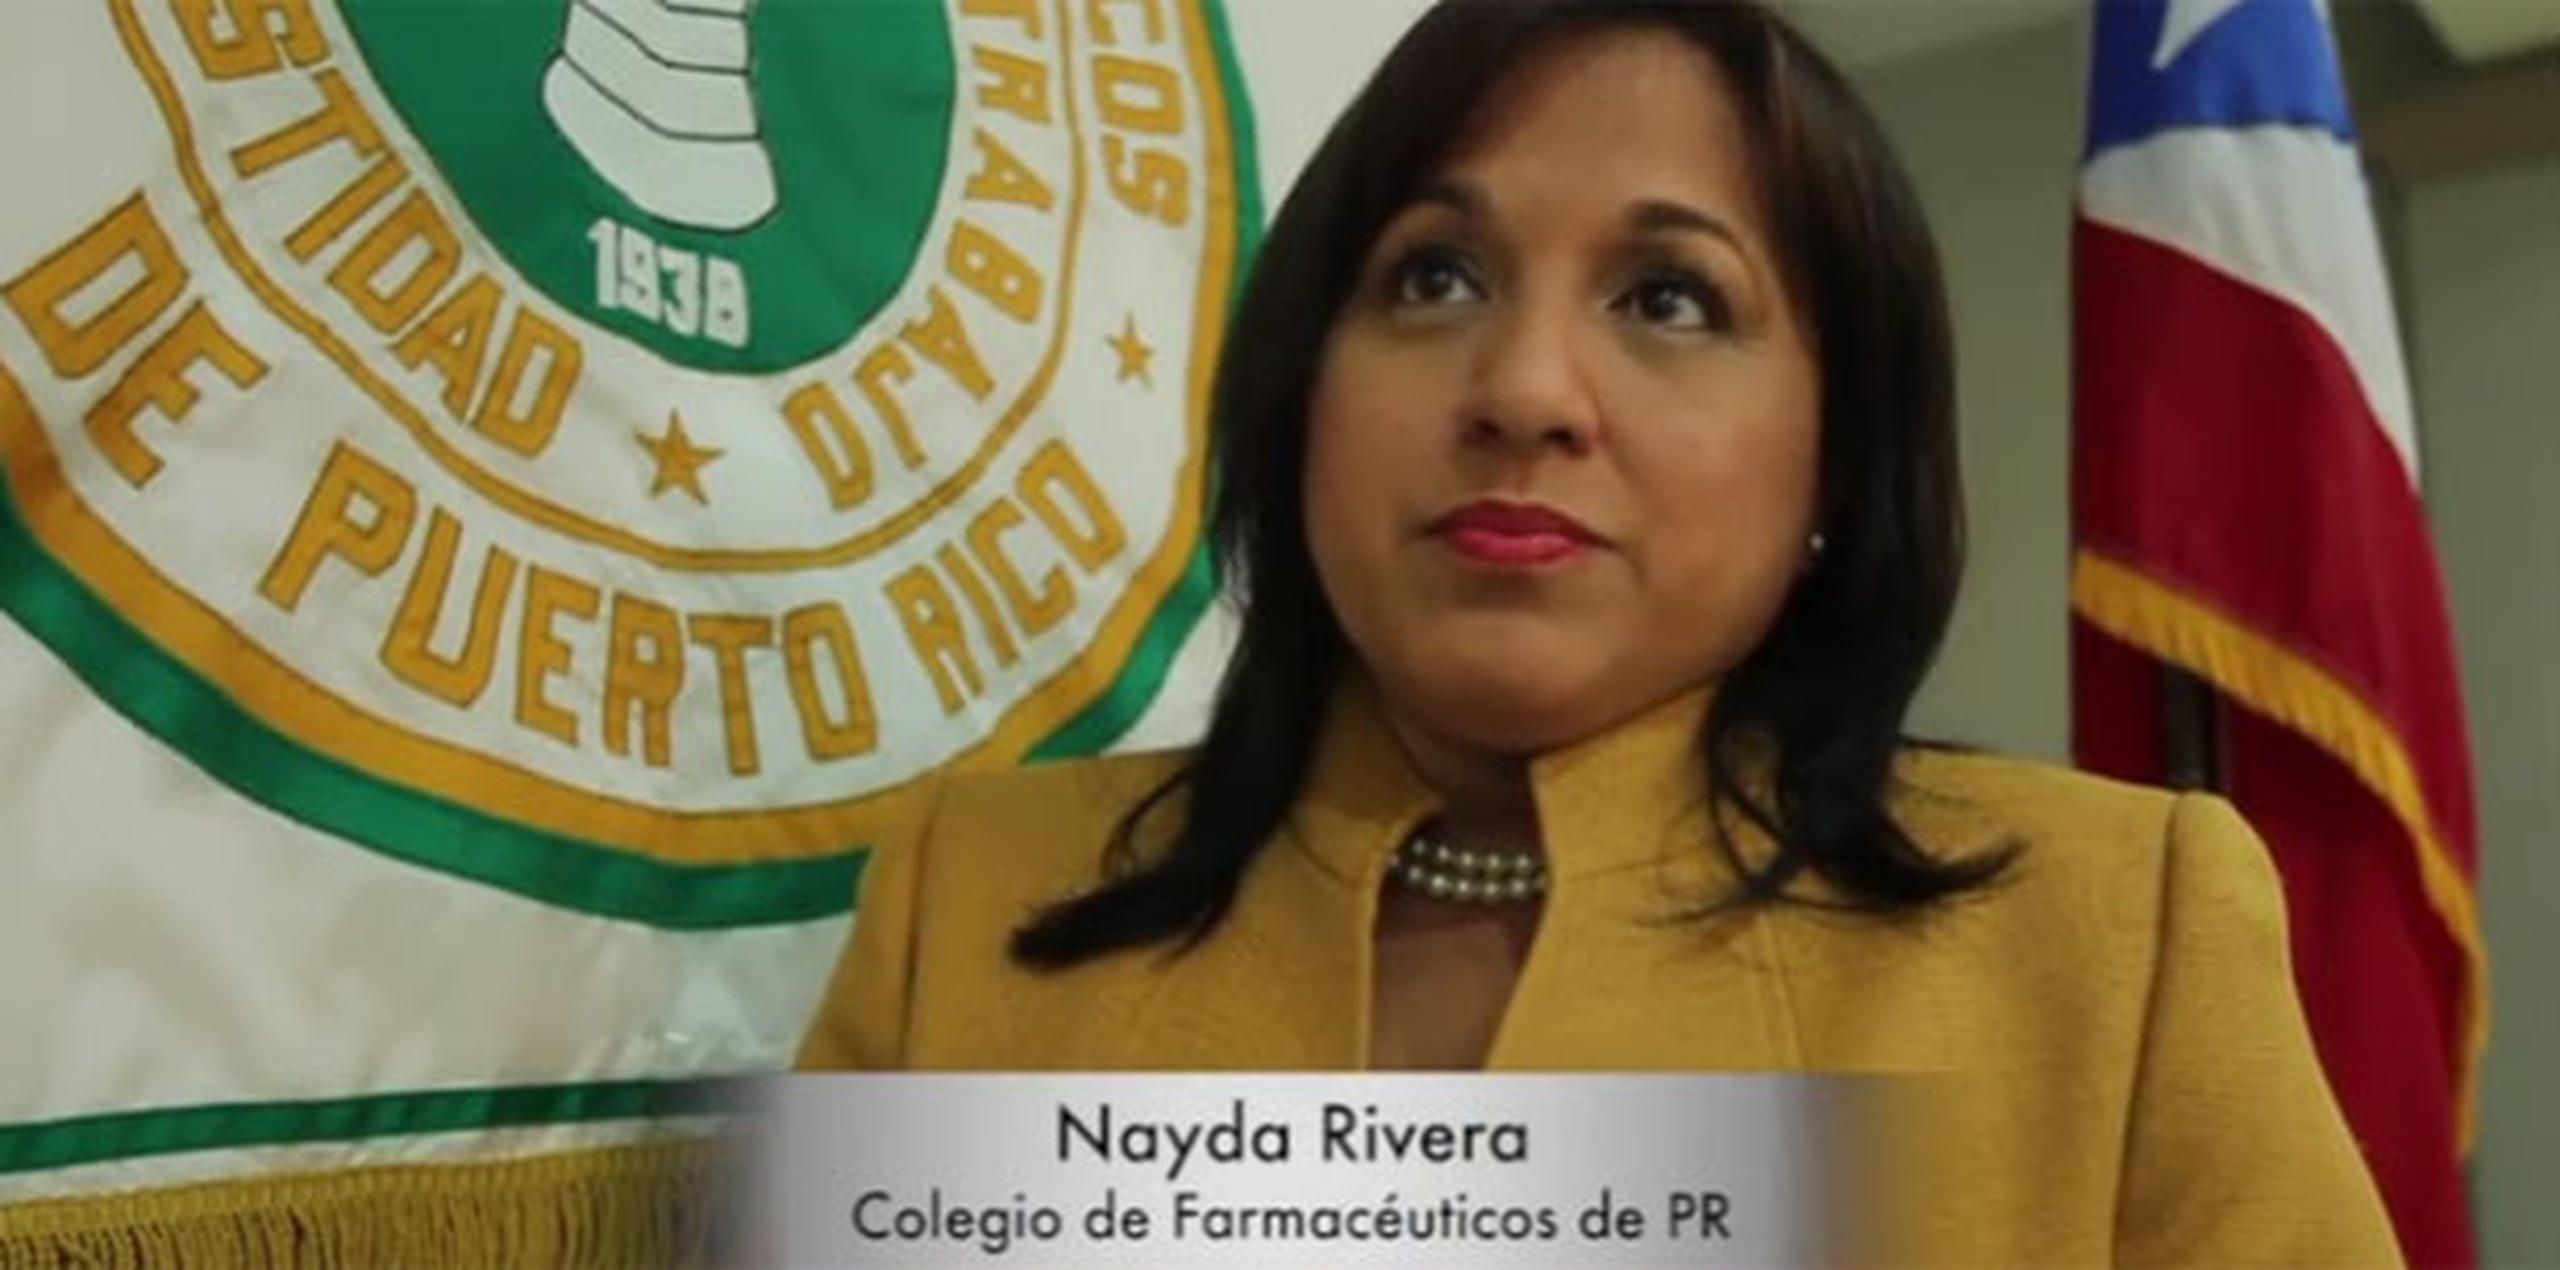 La presidenta del Colegio, Nayda Rivera, indicó en conferencia de prensa que el principal reclamo es que el reglamento descuida el aspecto de controles médicos en la dispensación de los derivados de la planta de la marihuana. (Archivo)